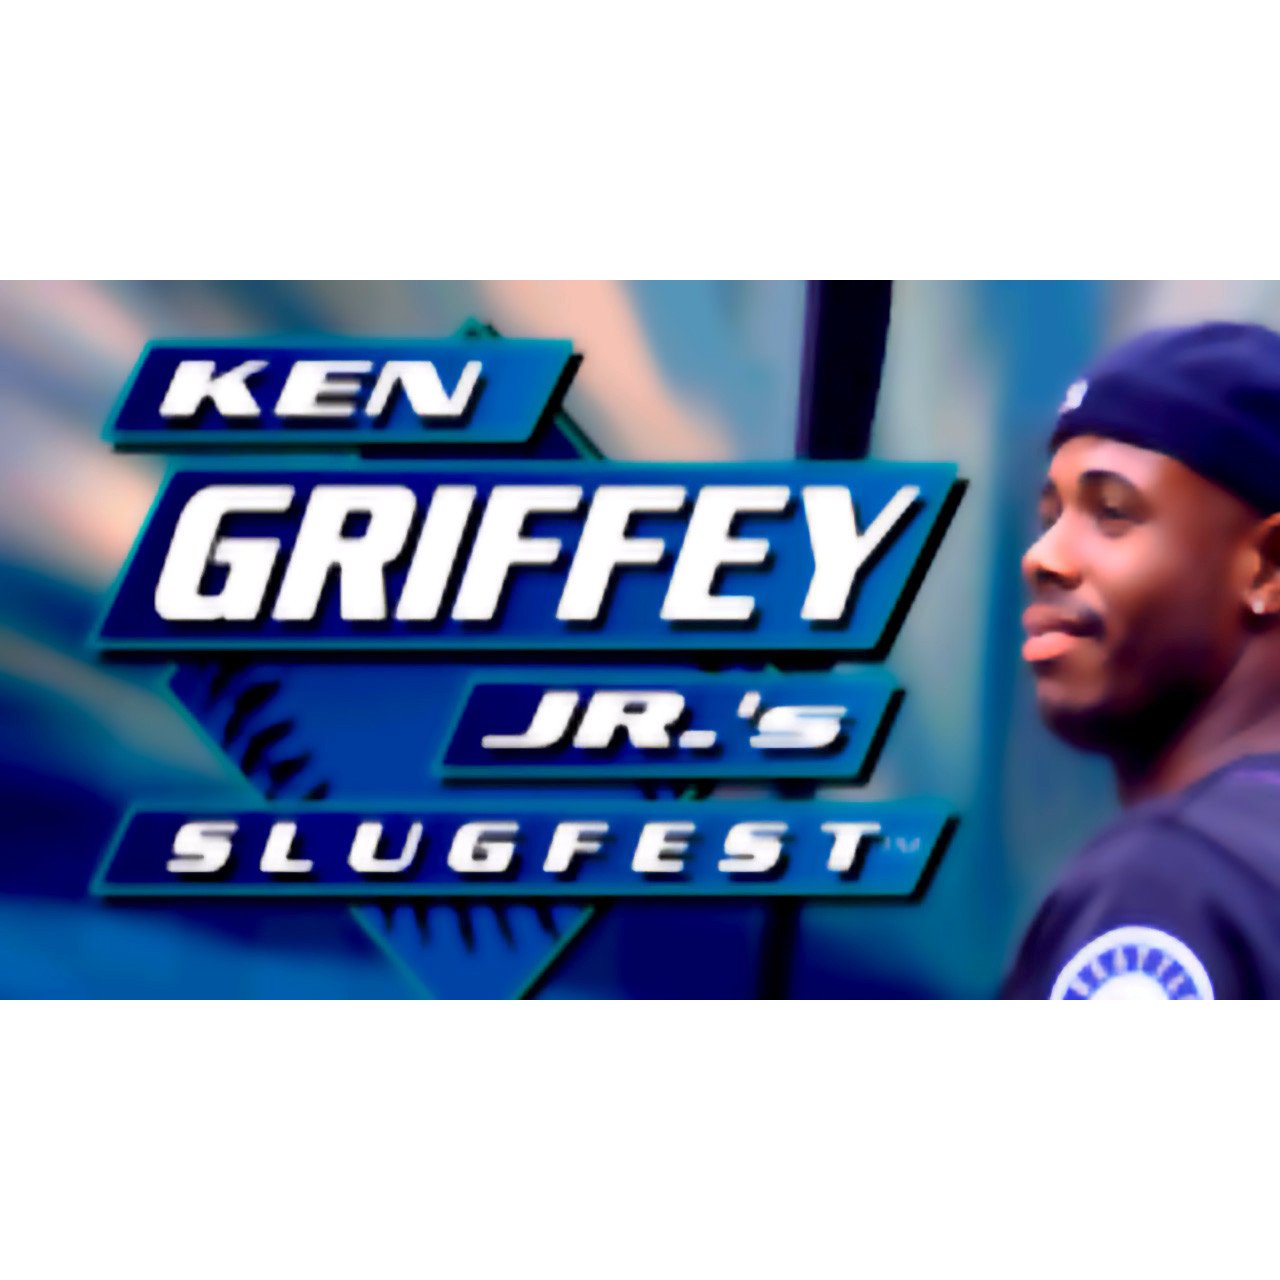 Ken Griffey Jr.'s Slugfest